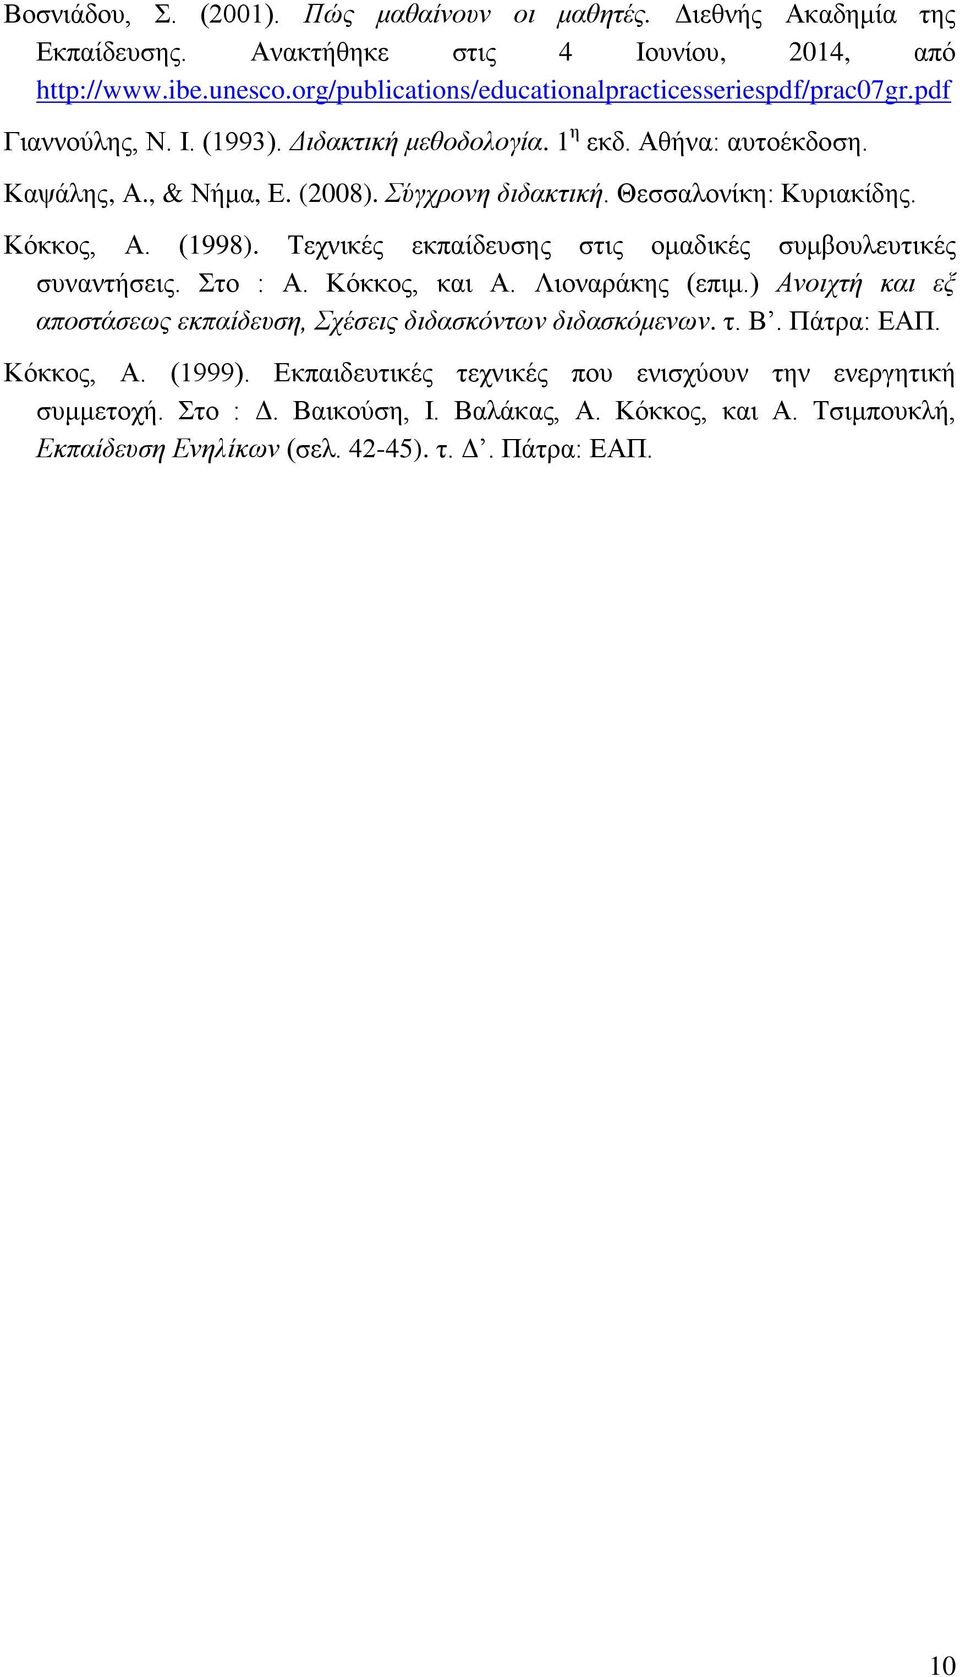 Θεσσαλονίκη: Κυριακίδης. Κόκκος, Α. (1998). Τεχνικές εκπαίδευσης στις ομαδικές συμβουλευτικές συναντήσεις. Στο : Α. Κόκκος, και Α. Λιοναράκης (επιμ.